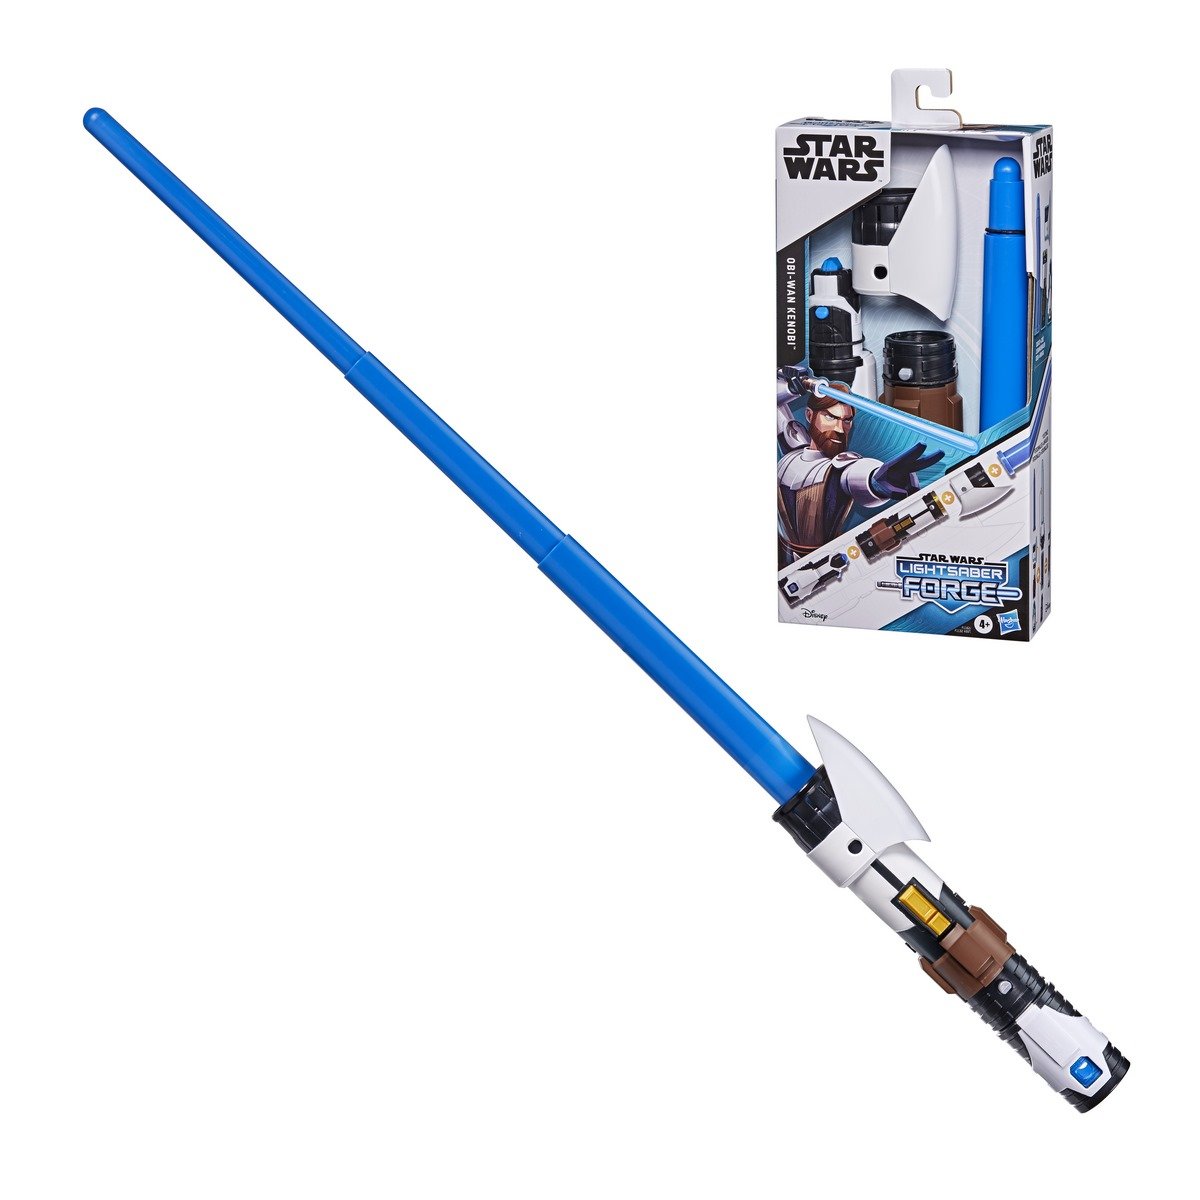 Star Wars Lightsaber Forge - Sabre laser personnalisable - La Grande Récré